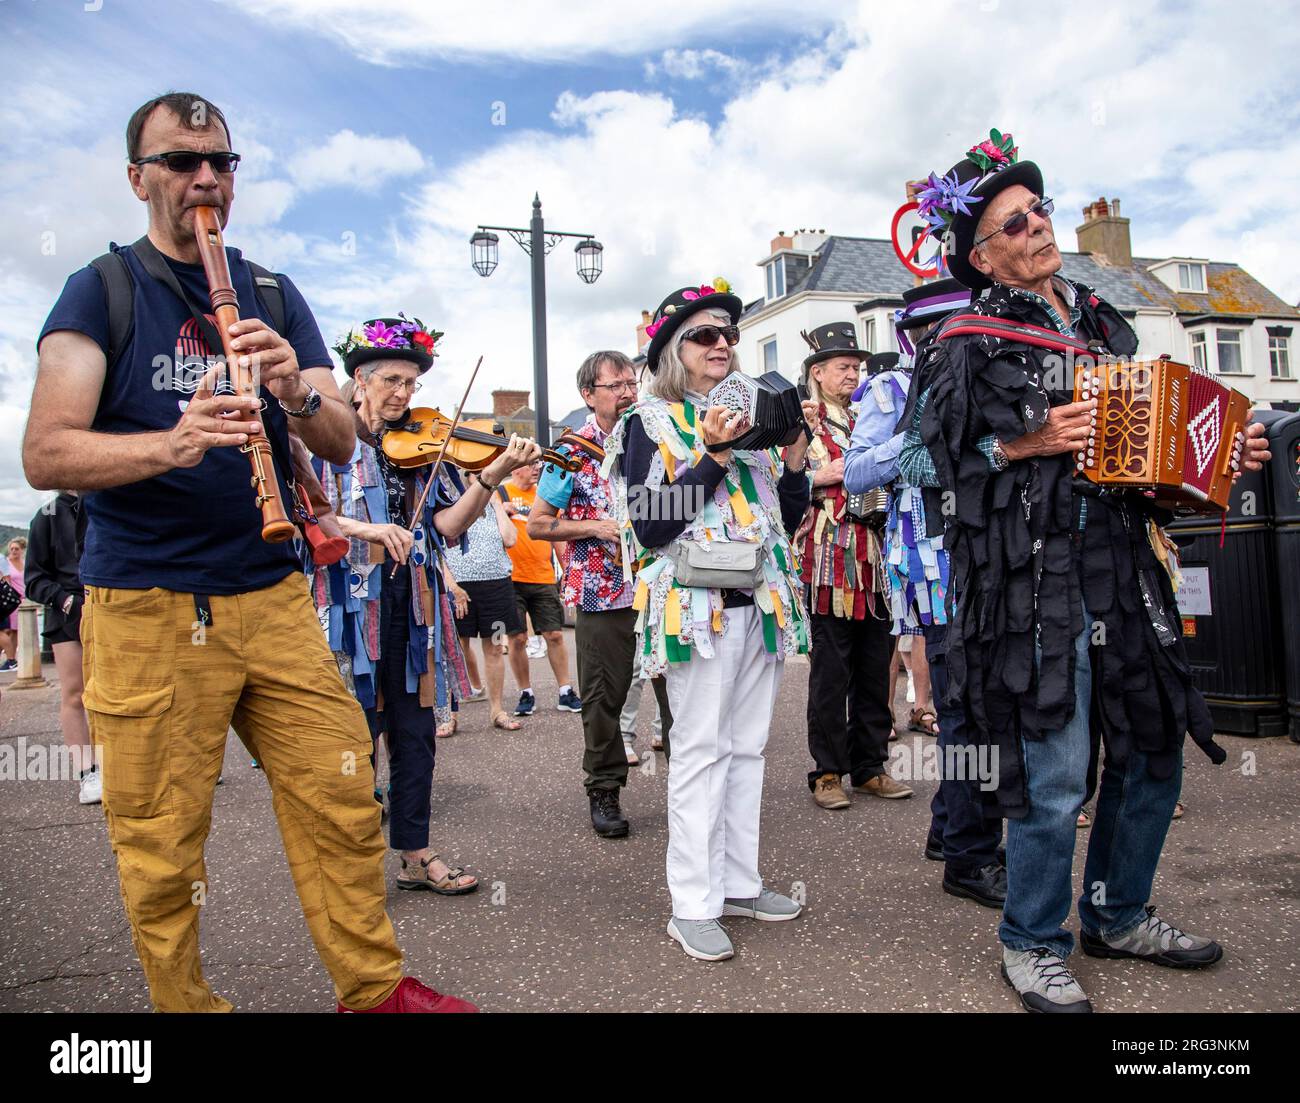 Sidmouth, 7 août 23 danse dans la rue au Sidmouth Folk Festival. Maintenant dans sa 68e année, des spectacles de danse sont partout à Sidmouth Folk Festiva.l depuis humble débuts en 1955, l'événement rassemble maintenant des dizaines de milliers de musiciens et danseurs pour une semaine de toutes choses folkloriques. Crédit : photo Central/Alamy Live News Banque D'Images